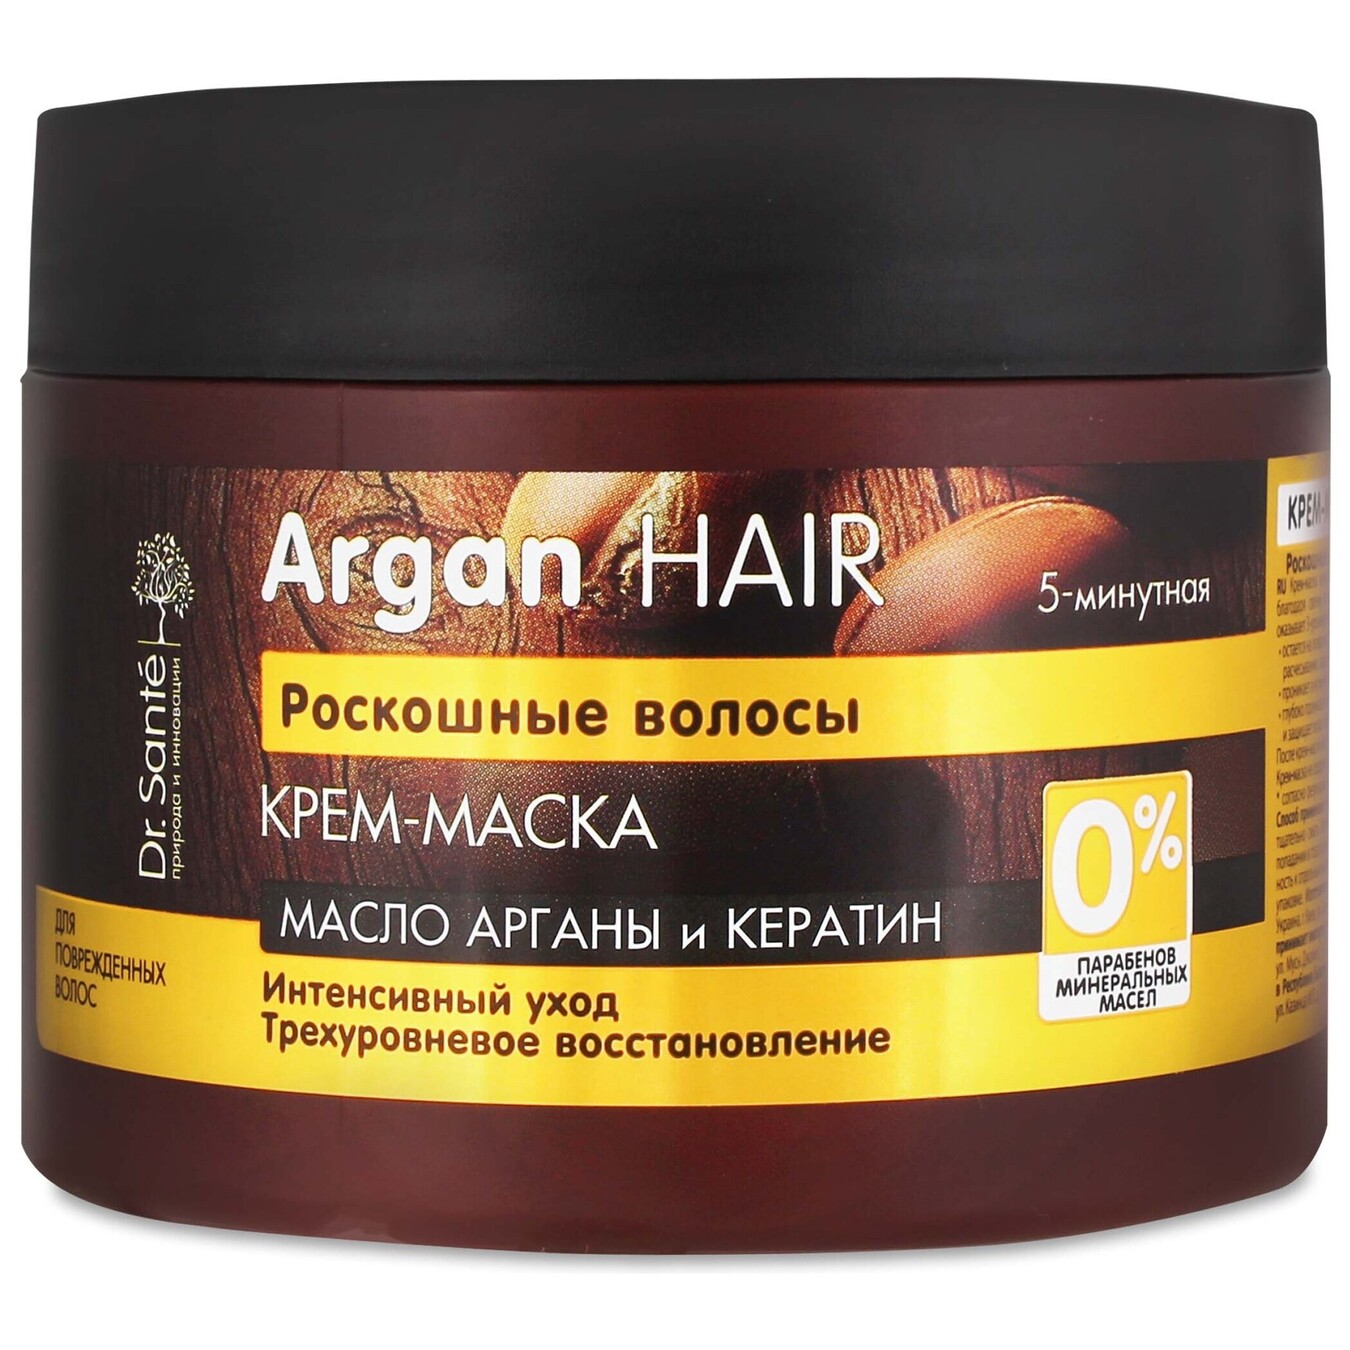 Cream mask Dr. Sante Argan Hair Luxurious hair 300ml